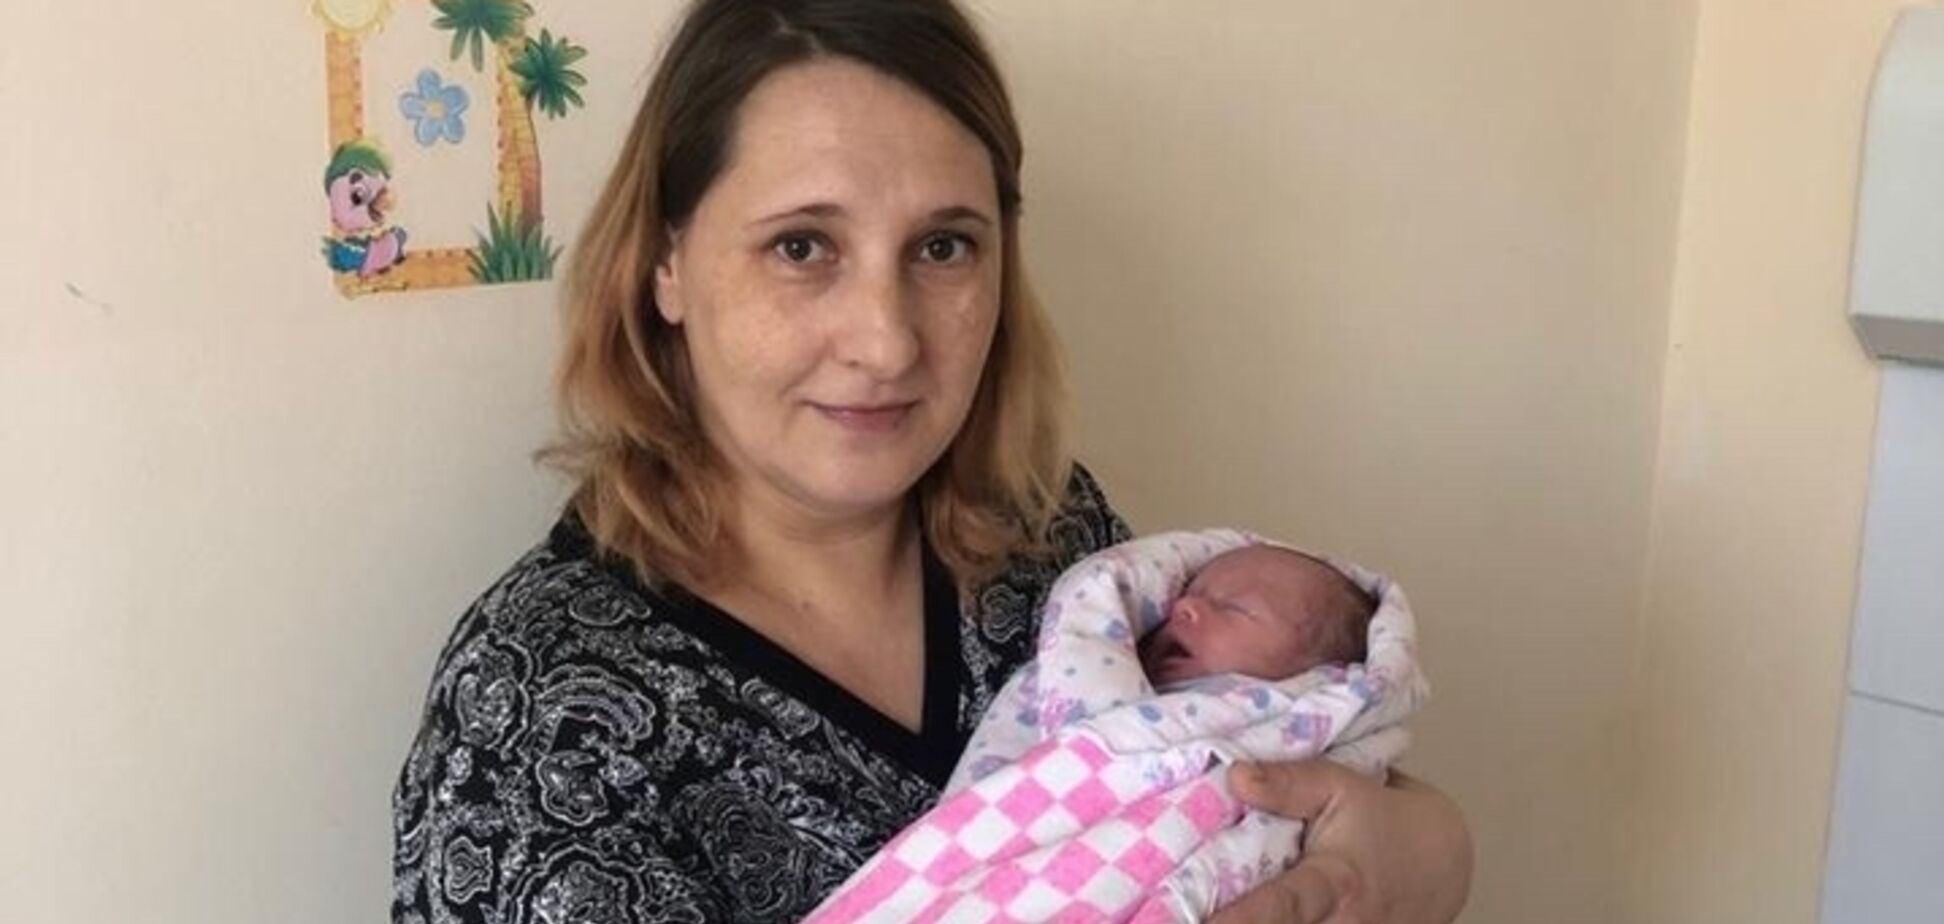 Справжнє диво: в Росії жінка народила здорову дитину при позаматковій вагітності